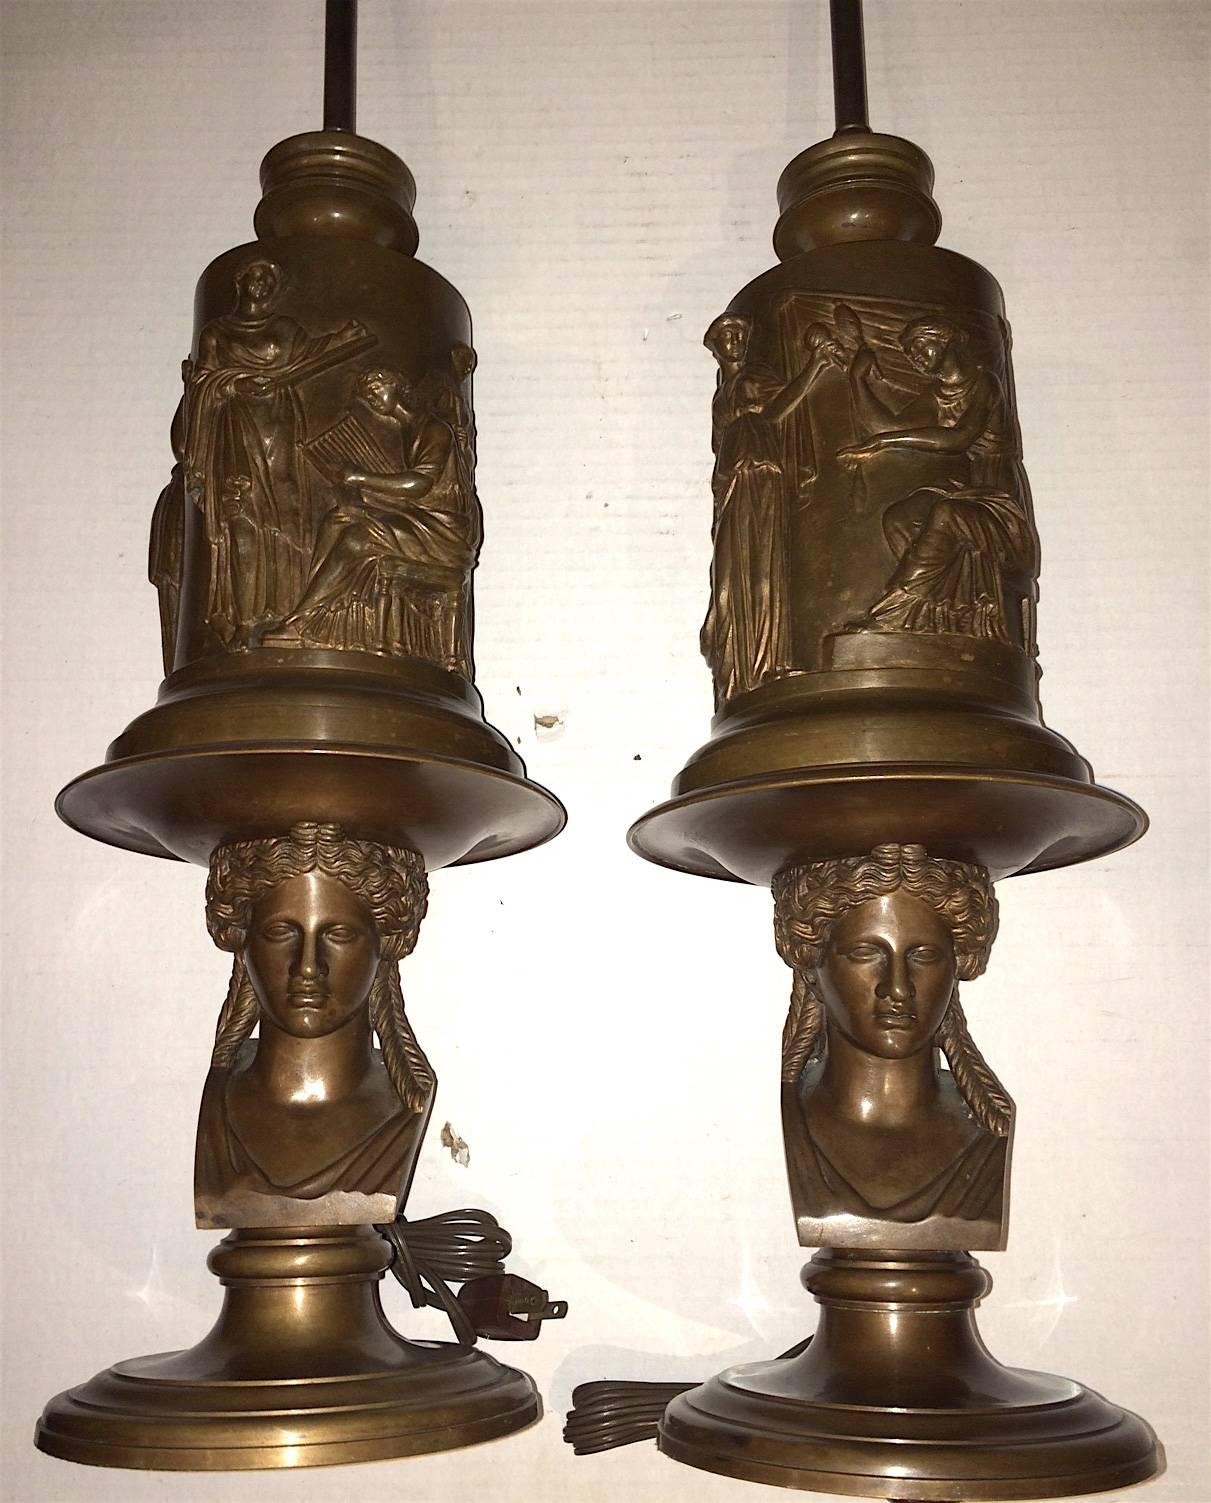 Paire de lampes de table françaises, en bronze moulé et patiné, avec des scènes néoclassiques sur le corps. Détail du buste sur la base. Signé par Barbedienne.

Mesures : 22